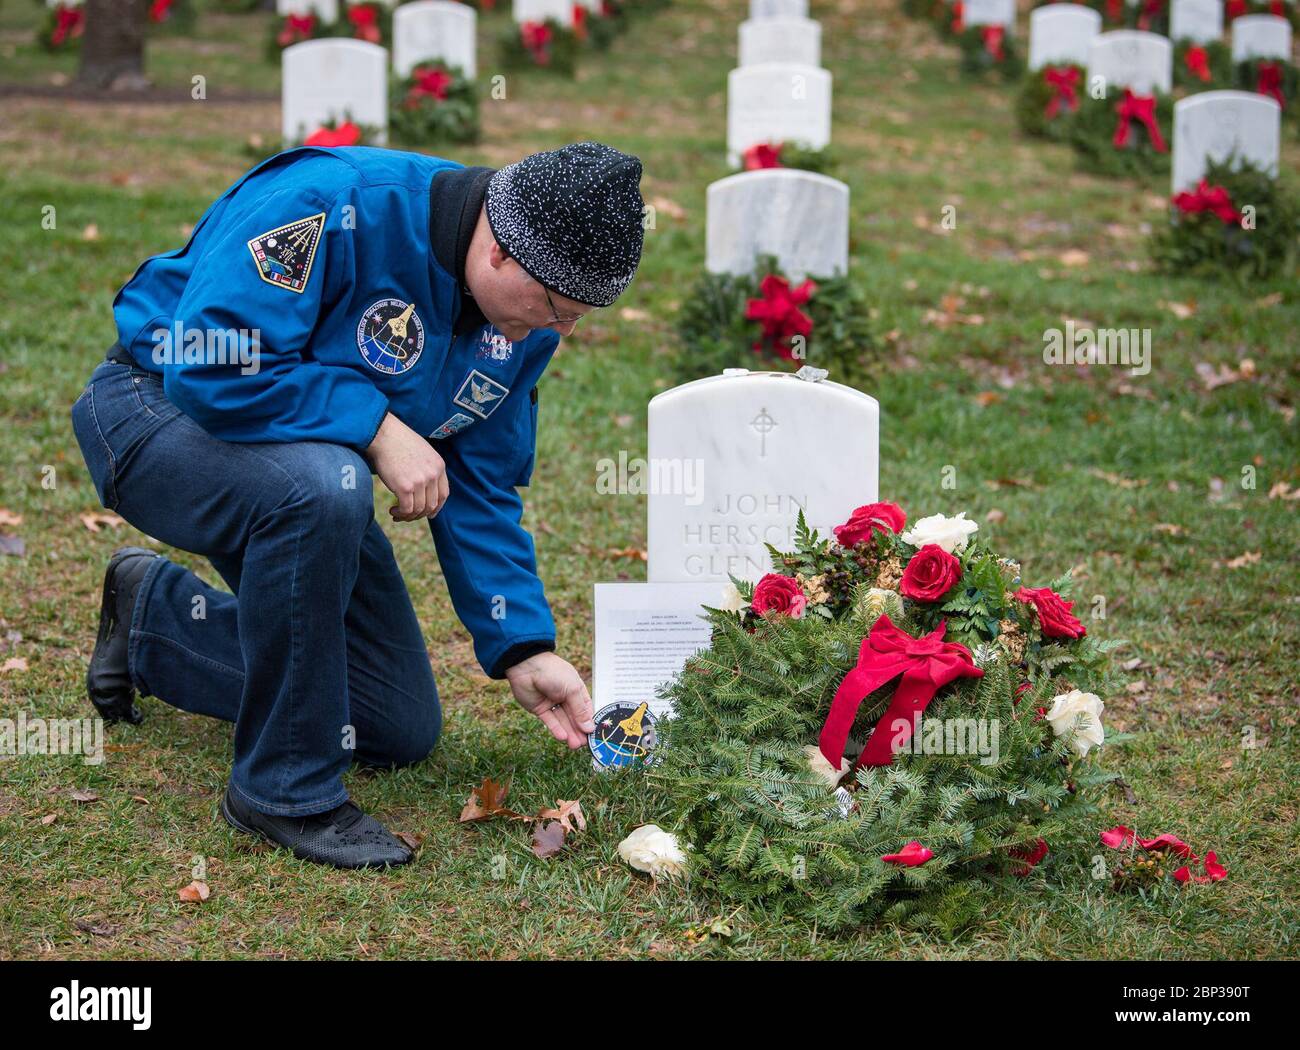 Doug Wheelock participe à la journée des couronnes à travers l'Amérique l'astronaute de la NASA Doug Wheelock quitte son timbre de mission STS-120 à la tombe de l'ancien astronaute et sénateur américain John Glenn, lors de la journée des couronnes à travers l'Amérique au cimetière national d'Arlington, le samedi 14 décembre 2019 à Arlington, La journée des serments nationaux de la Virginie à travers l'Amérique a lieu chaque année pour célébrer la vie des vétérans militaires et des couronnes sont placées au pied de chaque pierre d'angle. Wheelock a honoré ceux qui ont perdu la vie dans la quête de l'exploration spatiale ainsi que les autres membres du service. Banque D'Images